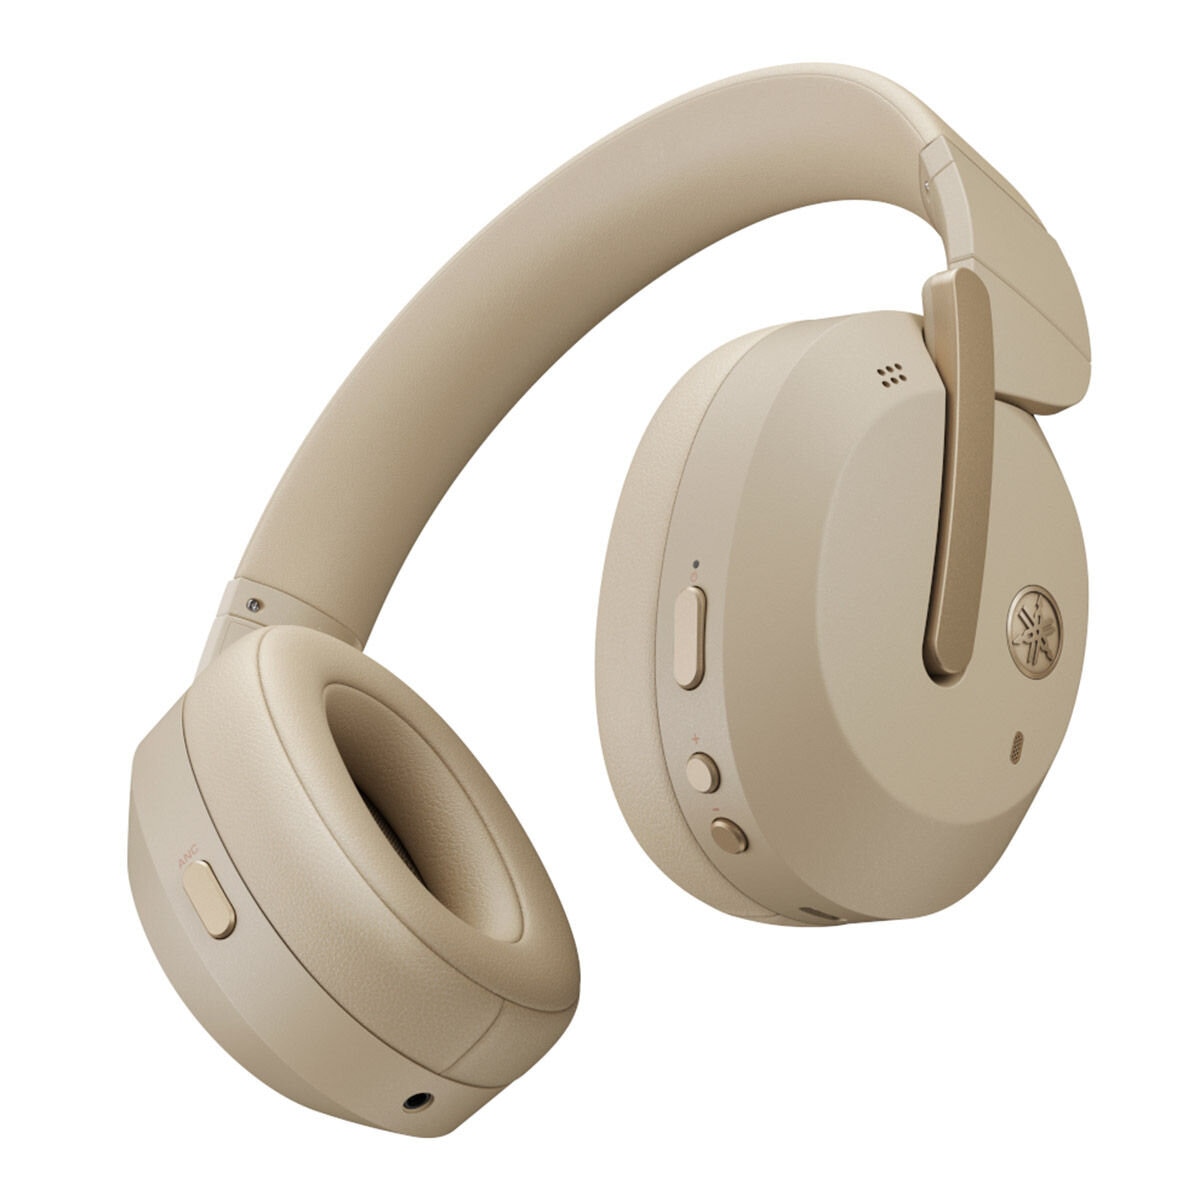 Yamaha 無線進階降噪耳罩耳機 YH-E700B 米金色